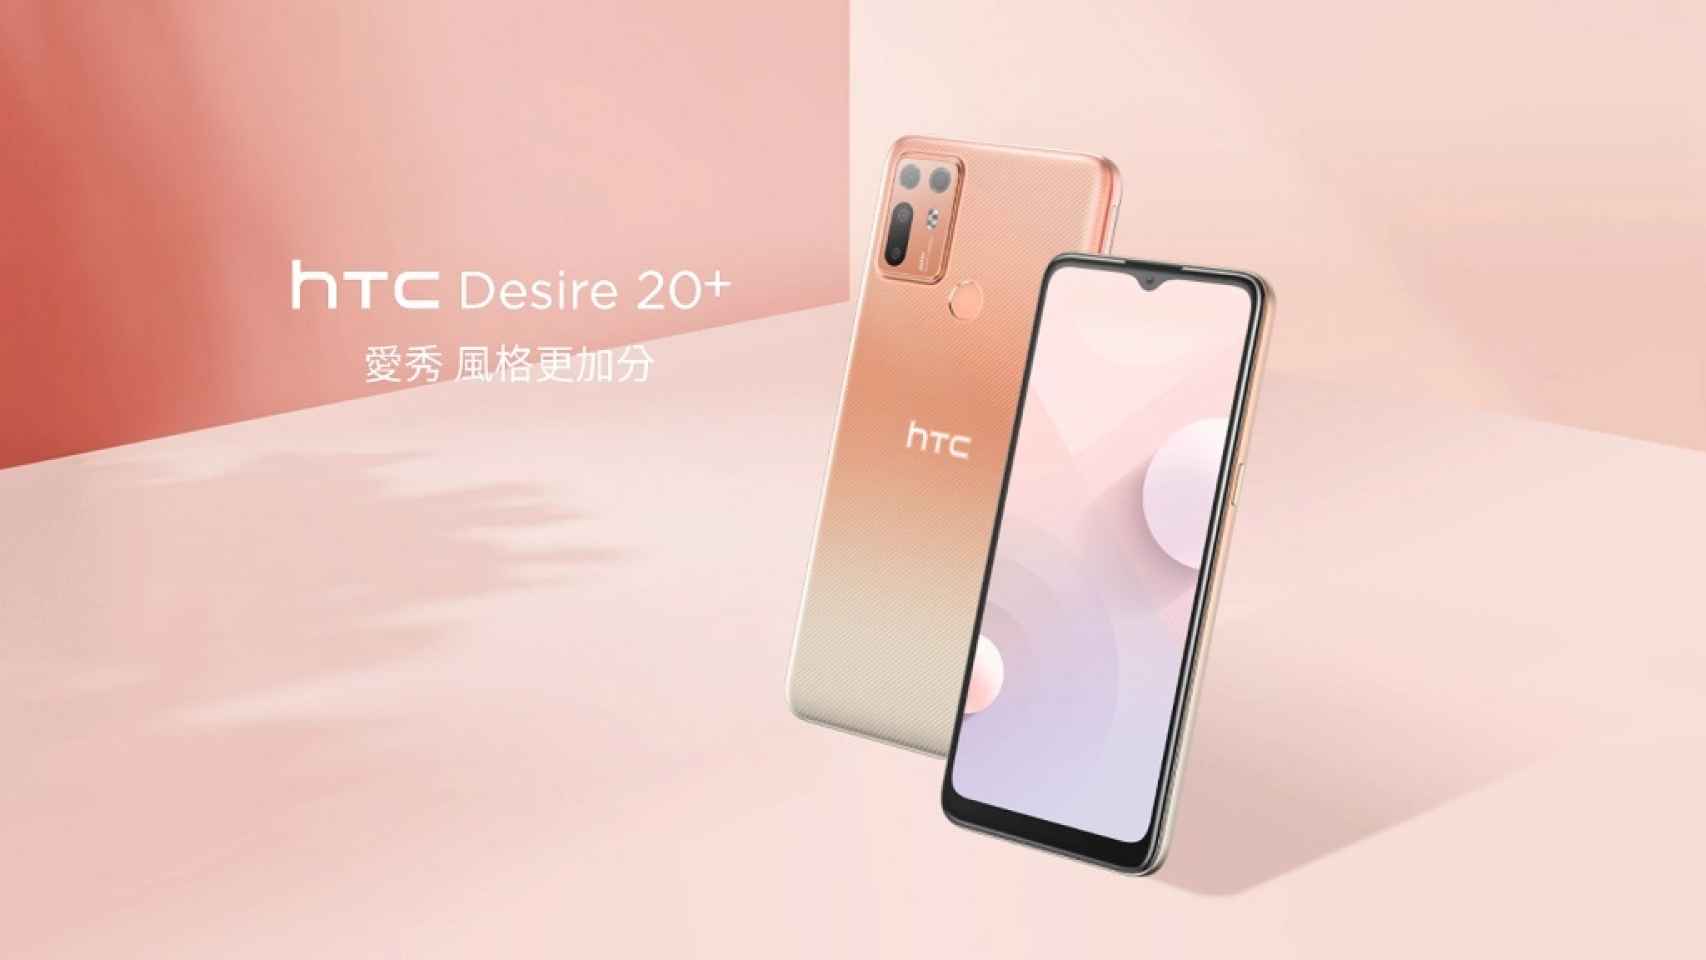 Nuevo HTC Desire 20+: especificaciones, fotos, precio y disponibilidad